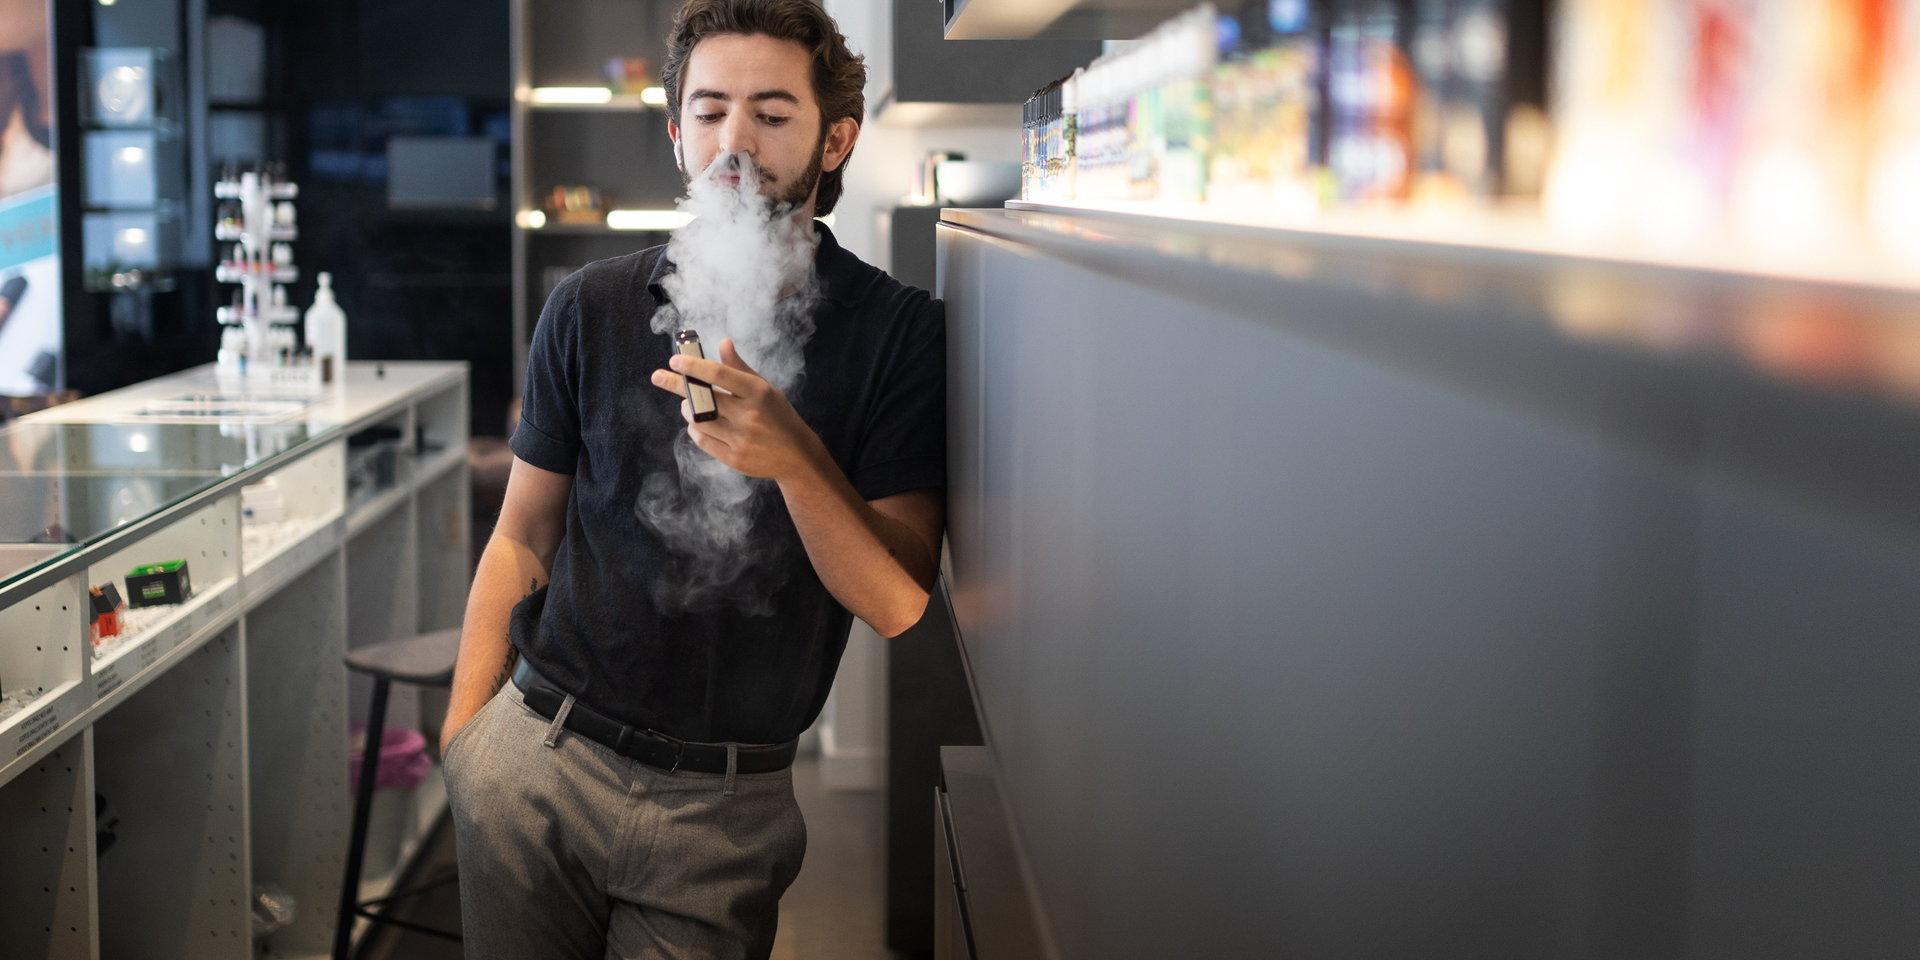 David Dierckx driver tre e-cigarettbutiker i Stockholm och tycker att åldersgränsen för e-cigaretter borde vara högre. 'När man är 18 år går man fortfarande i gymnasiet och har yngre kompisar. 20 år vore en bättre ålder tror jag', säger han.